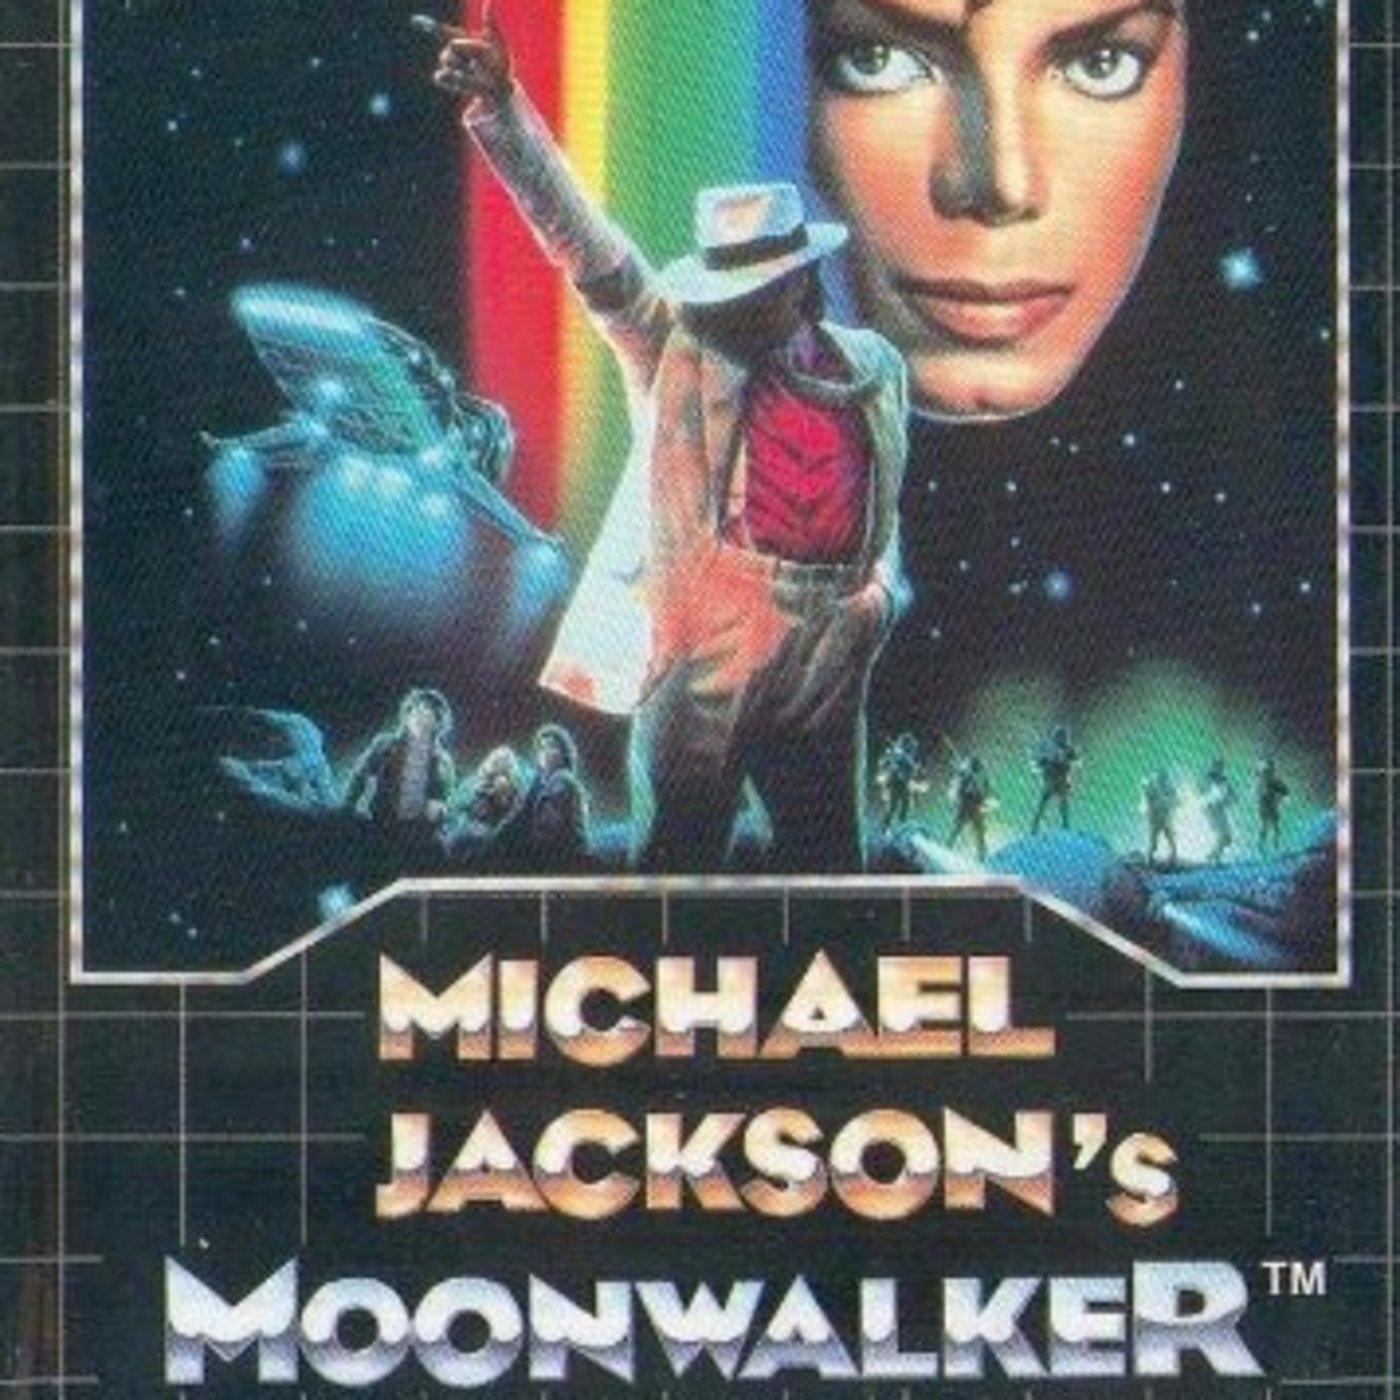 Episode 64 (Michael Jackson's Moonwalker)